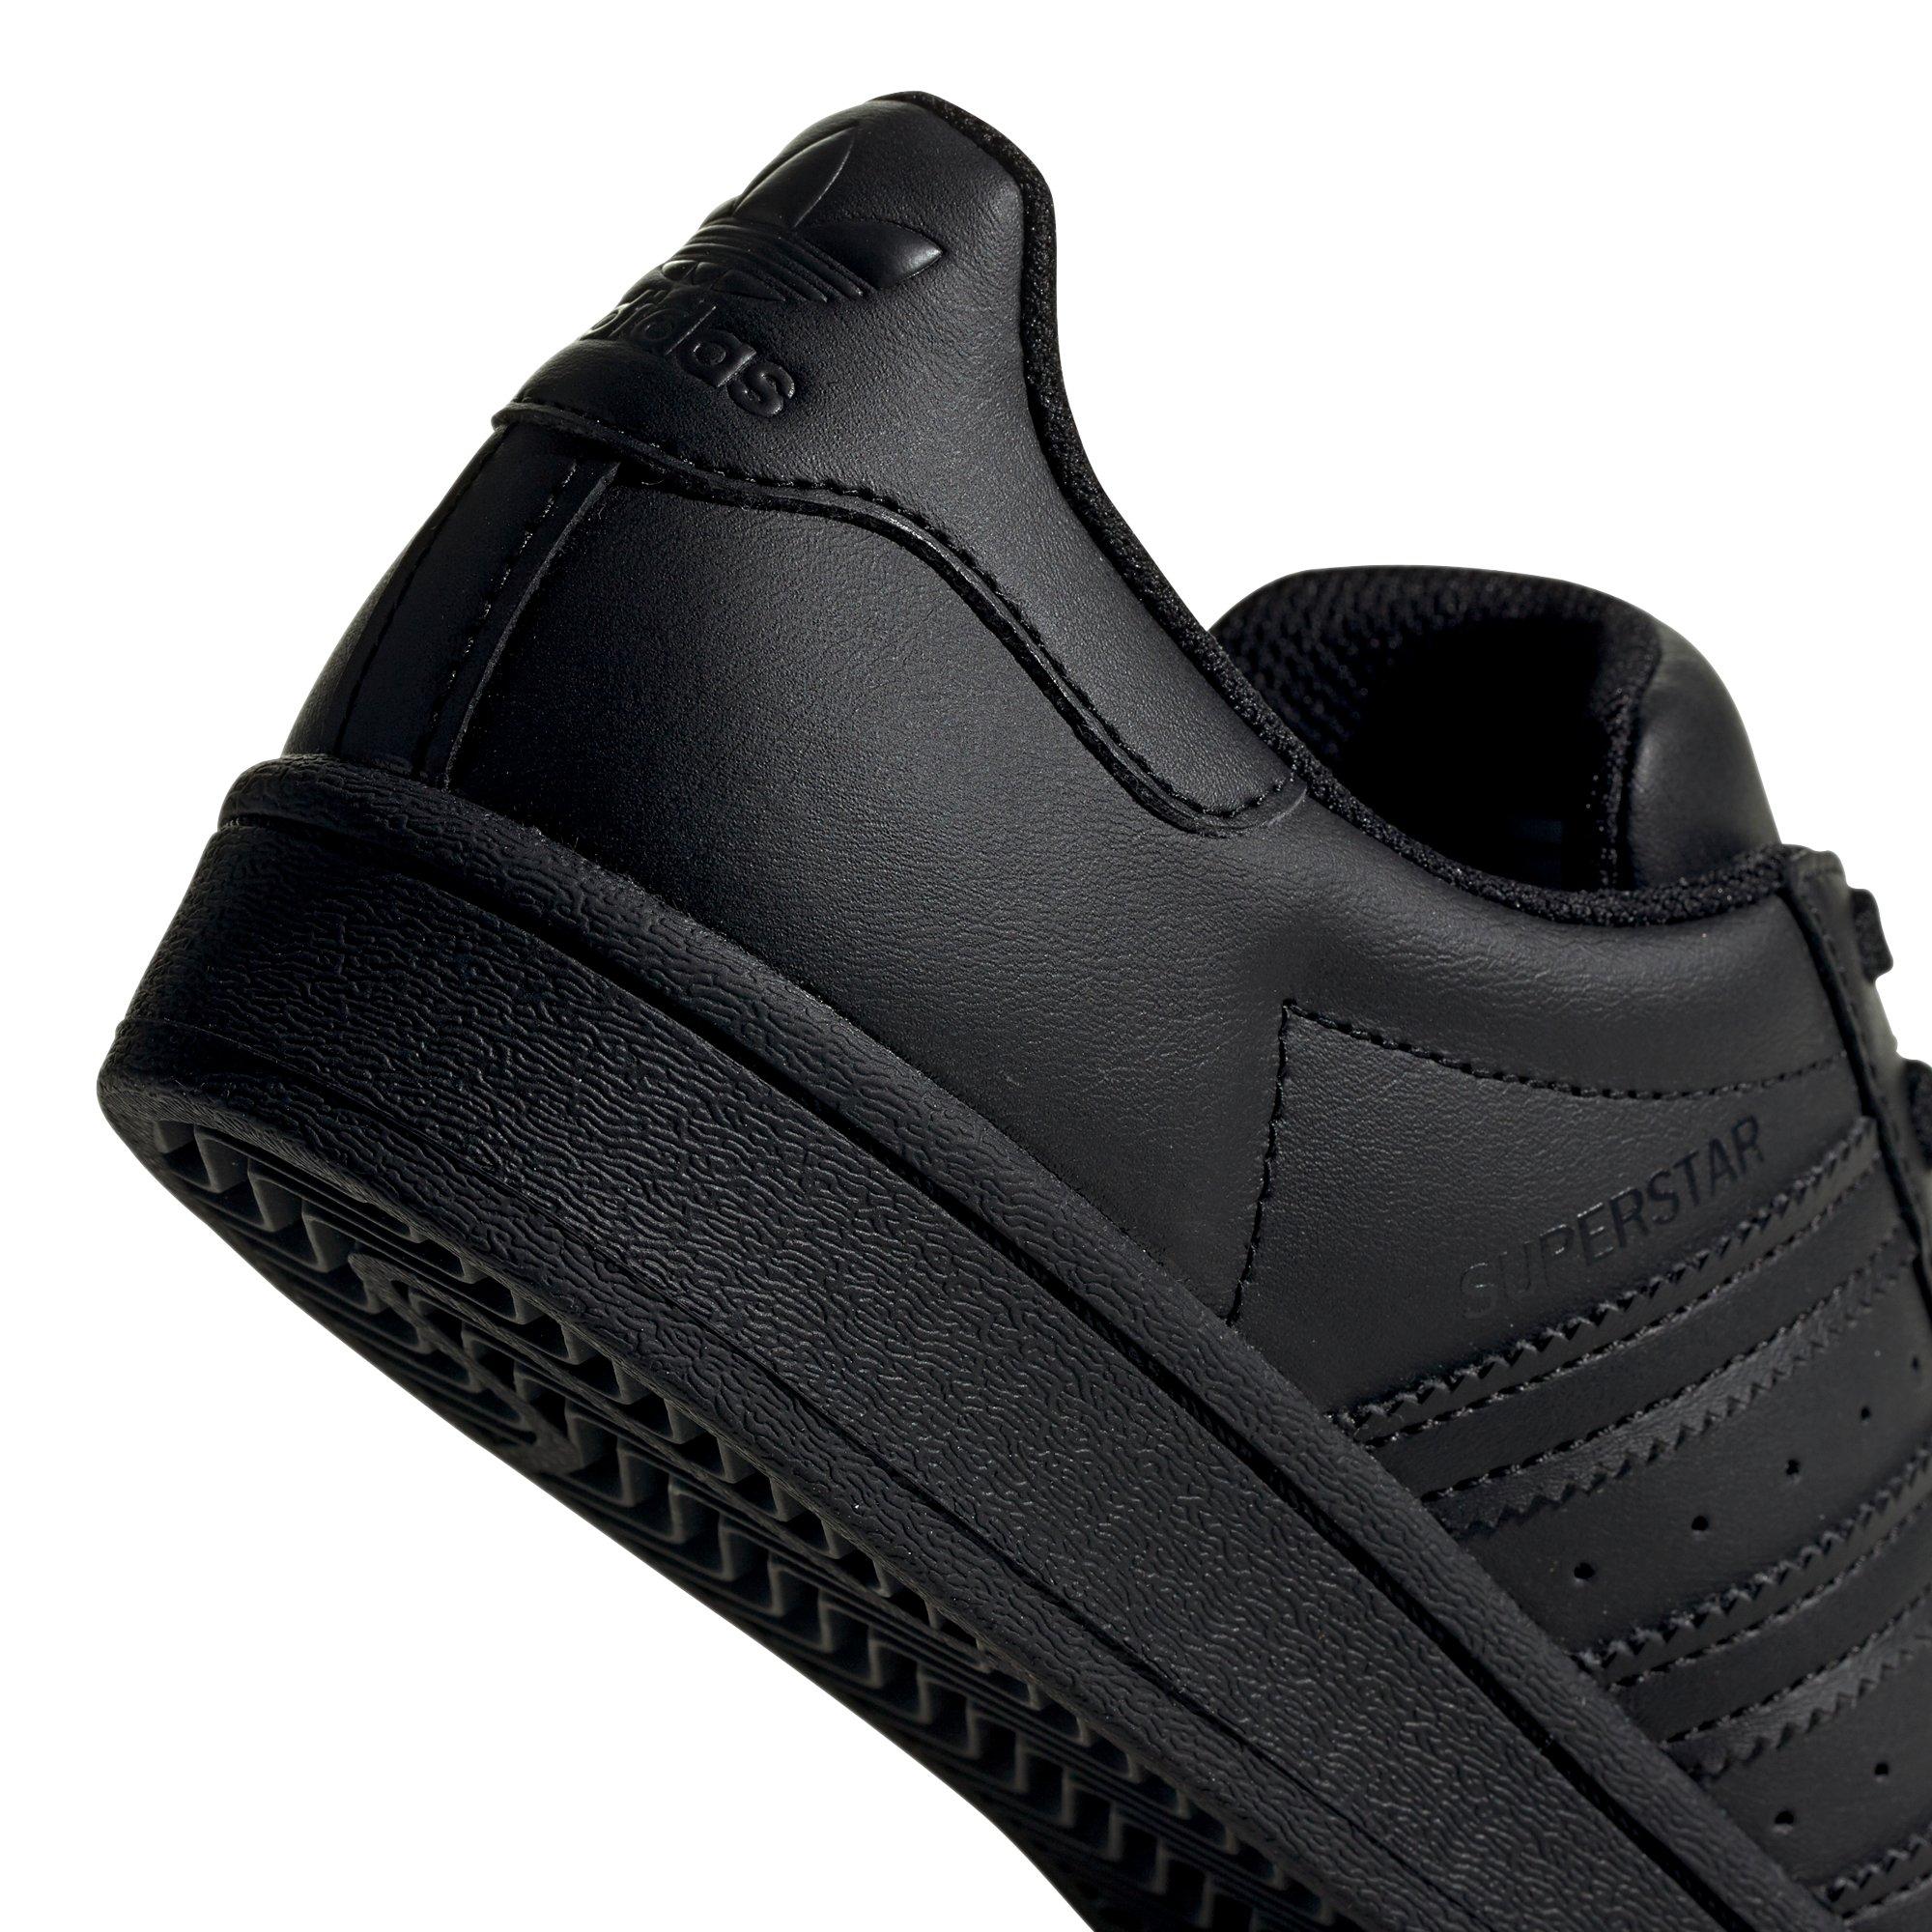 Superstar Black Shoes